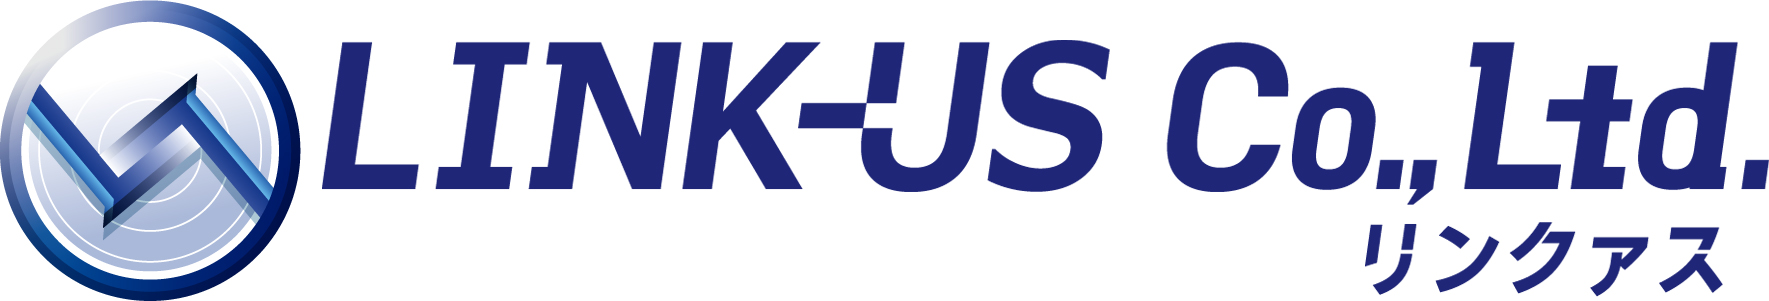 Link-US Co.,Ltd. Logo